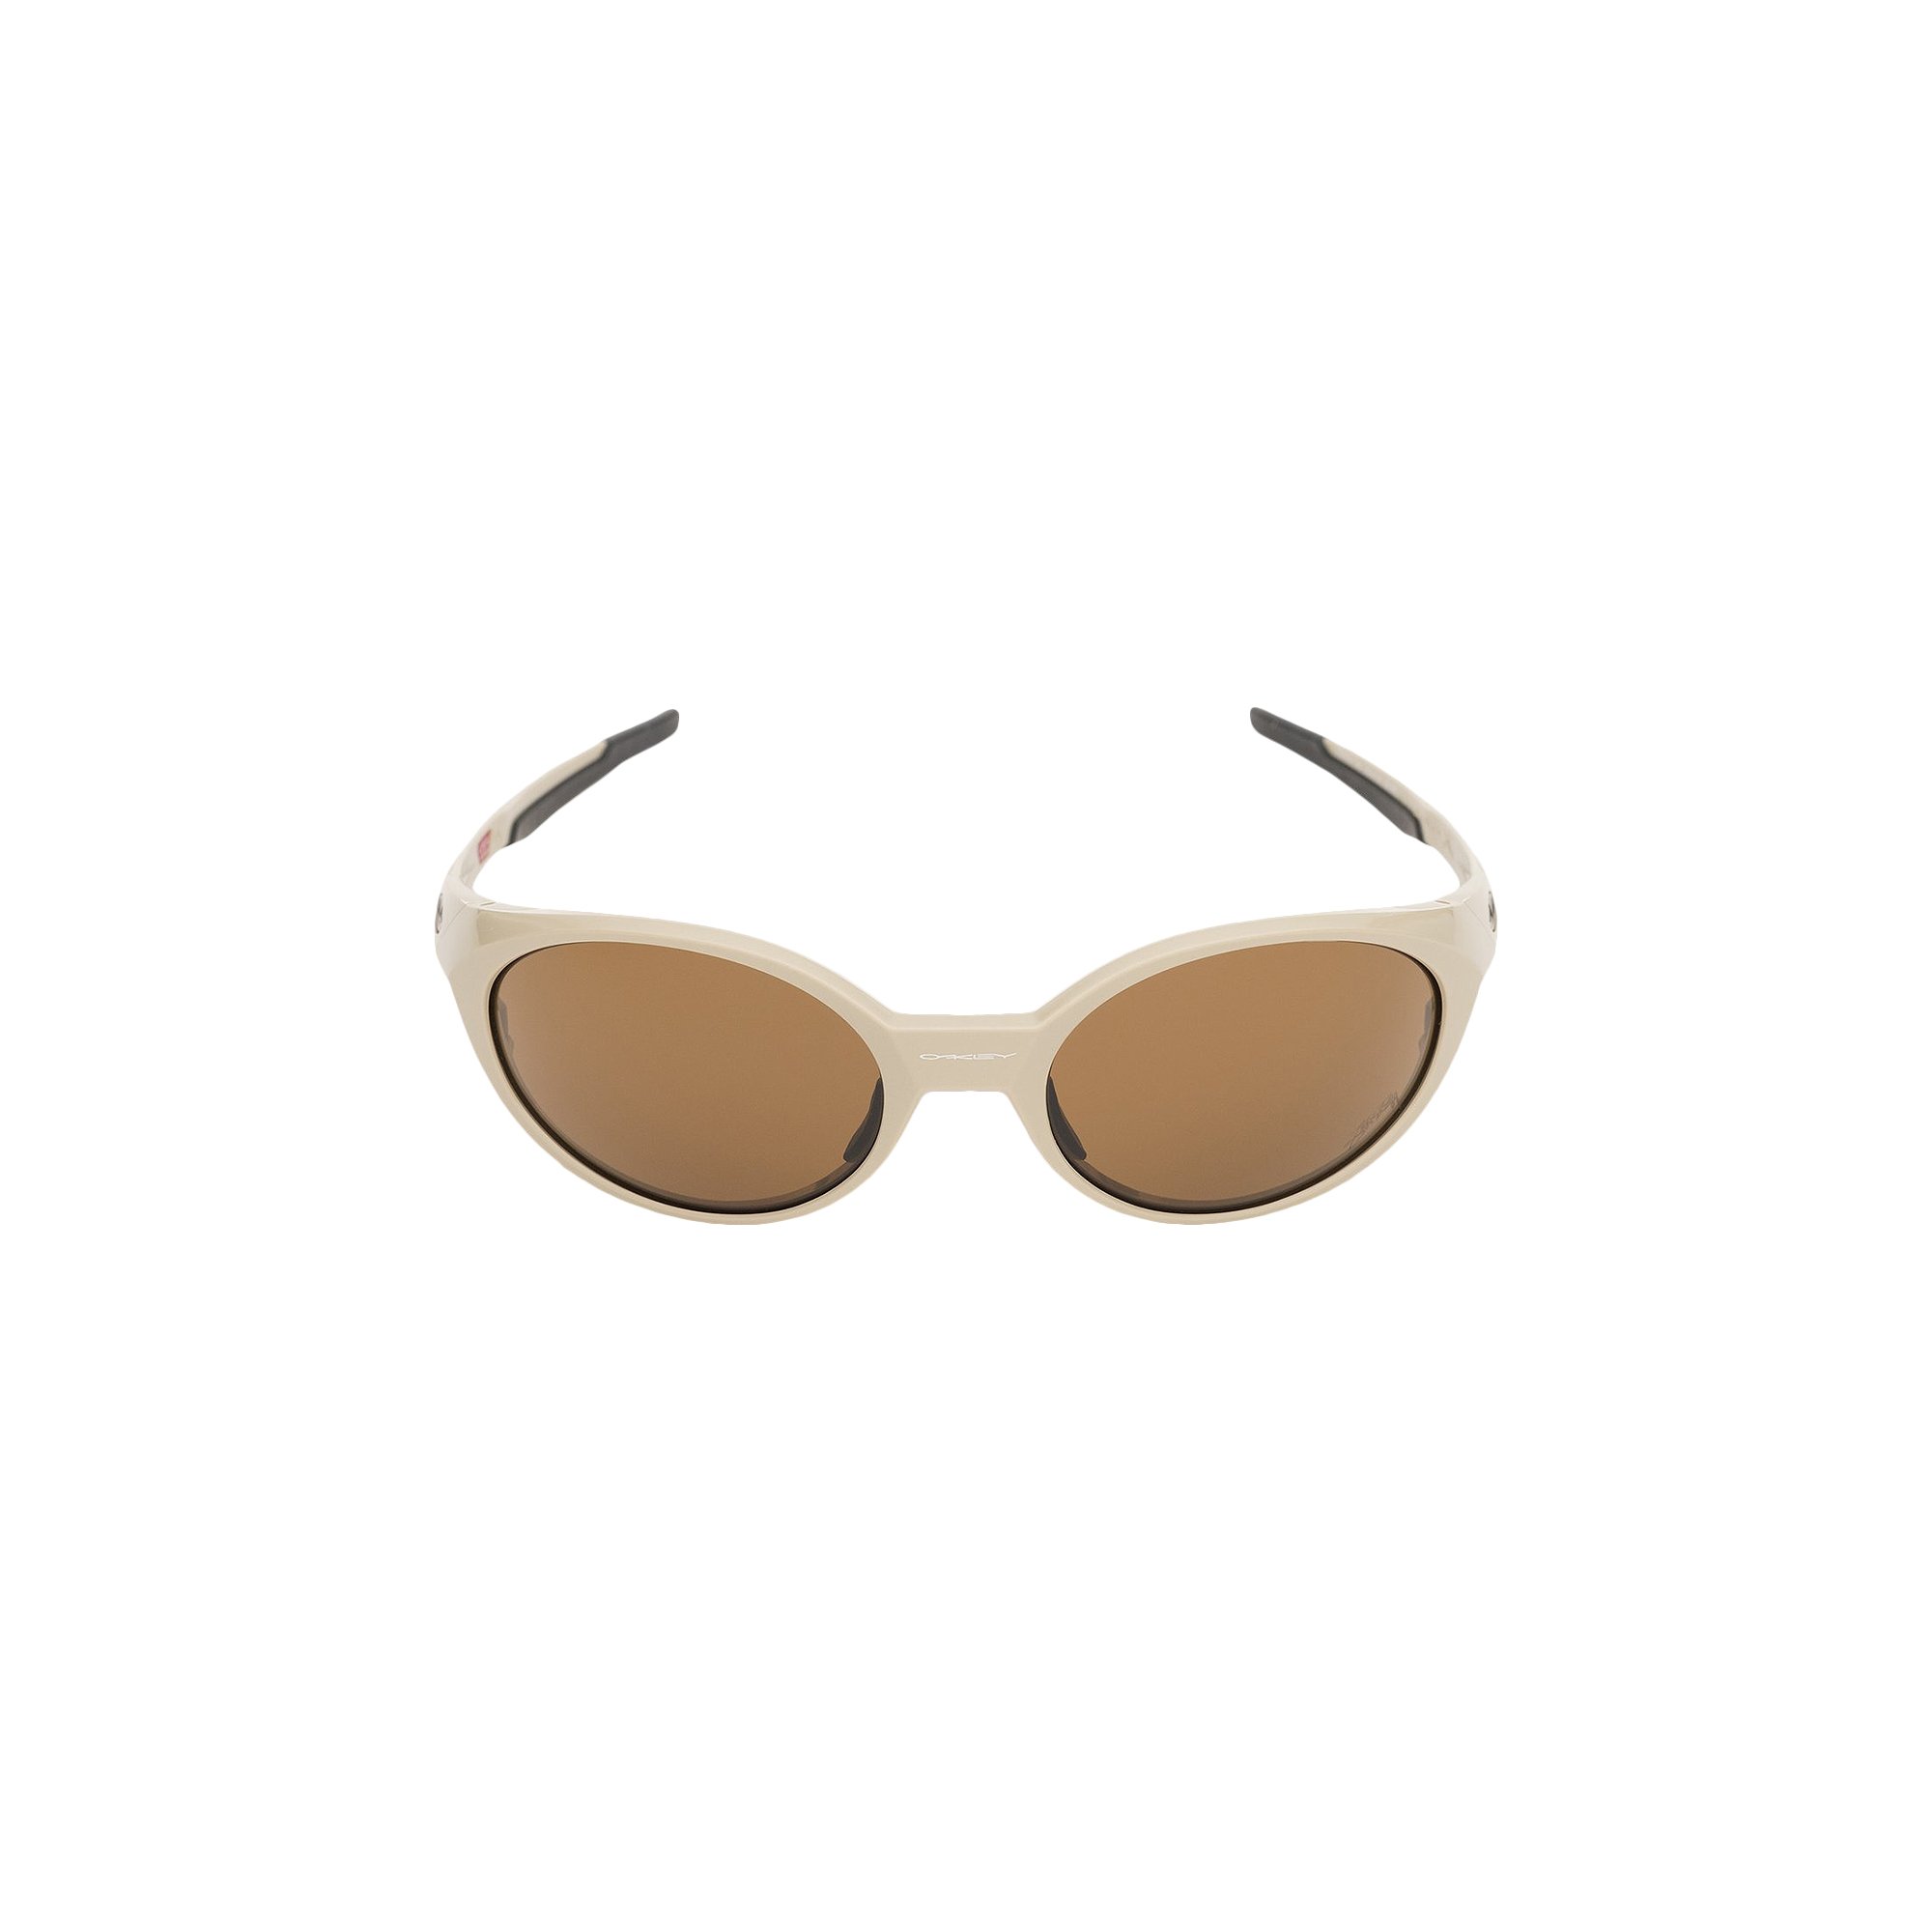 Buy Stussy x Oakley Eye Jacket Redux Sunglasses 'Sand' - 338157